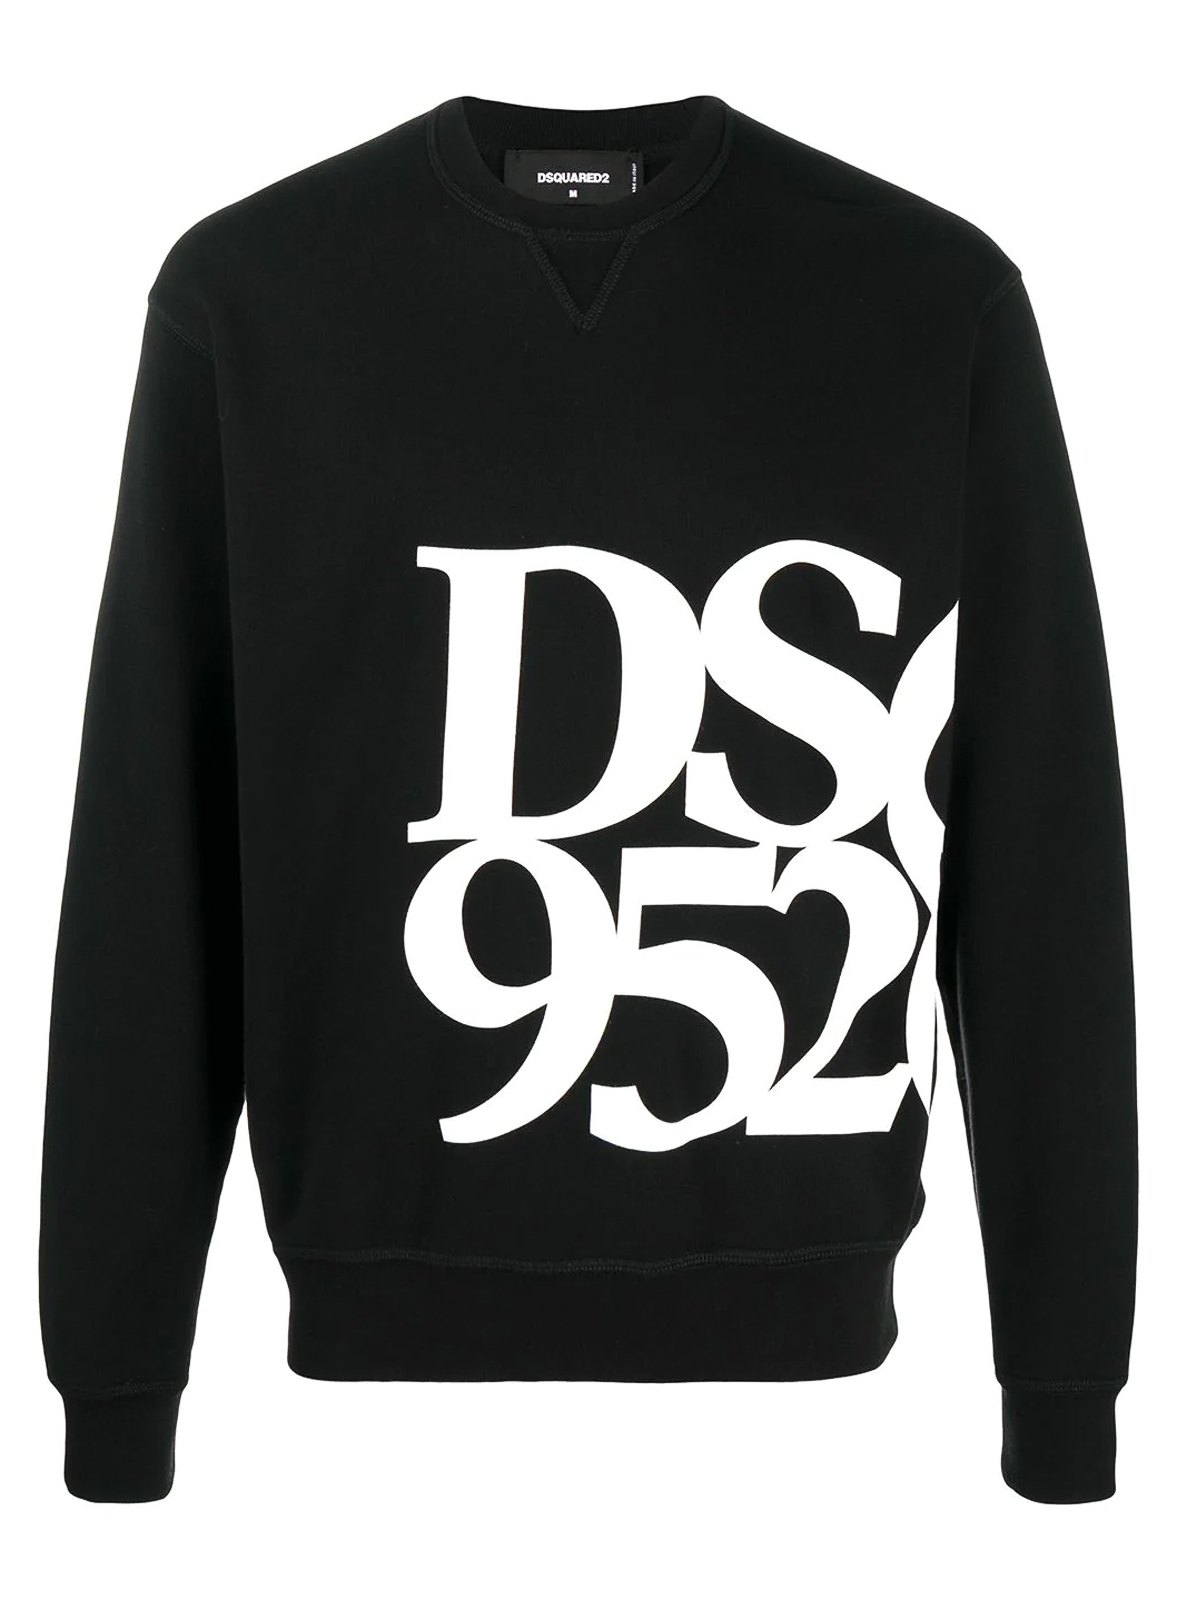 Dsquared2 - DSQ 9520 print sweatshirt 